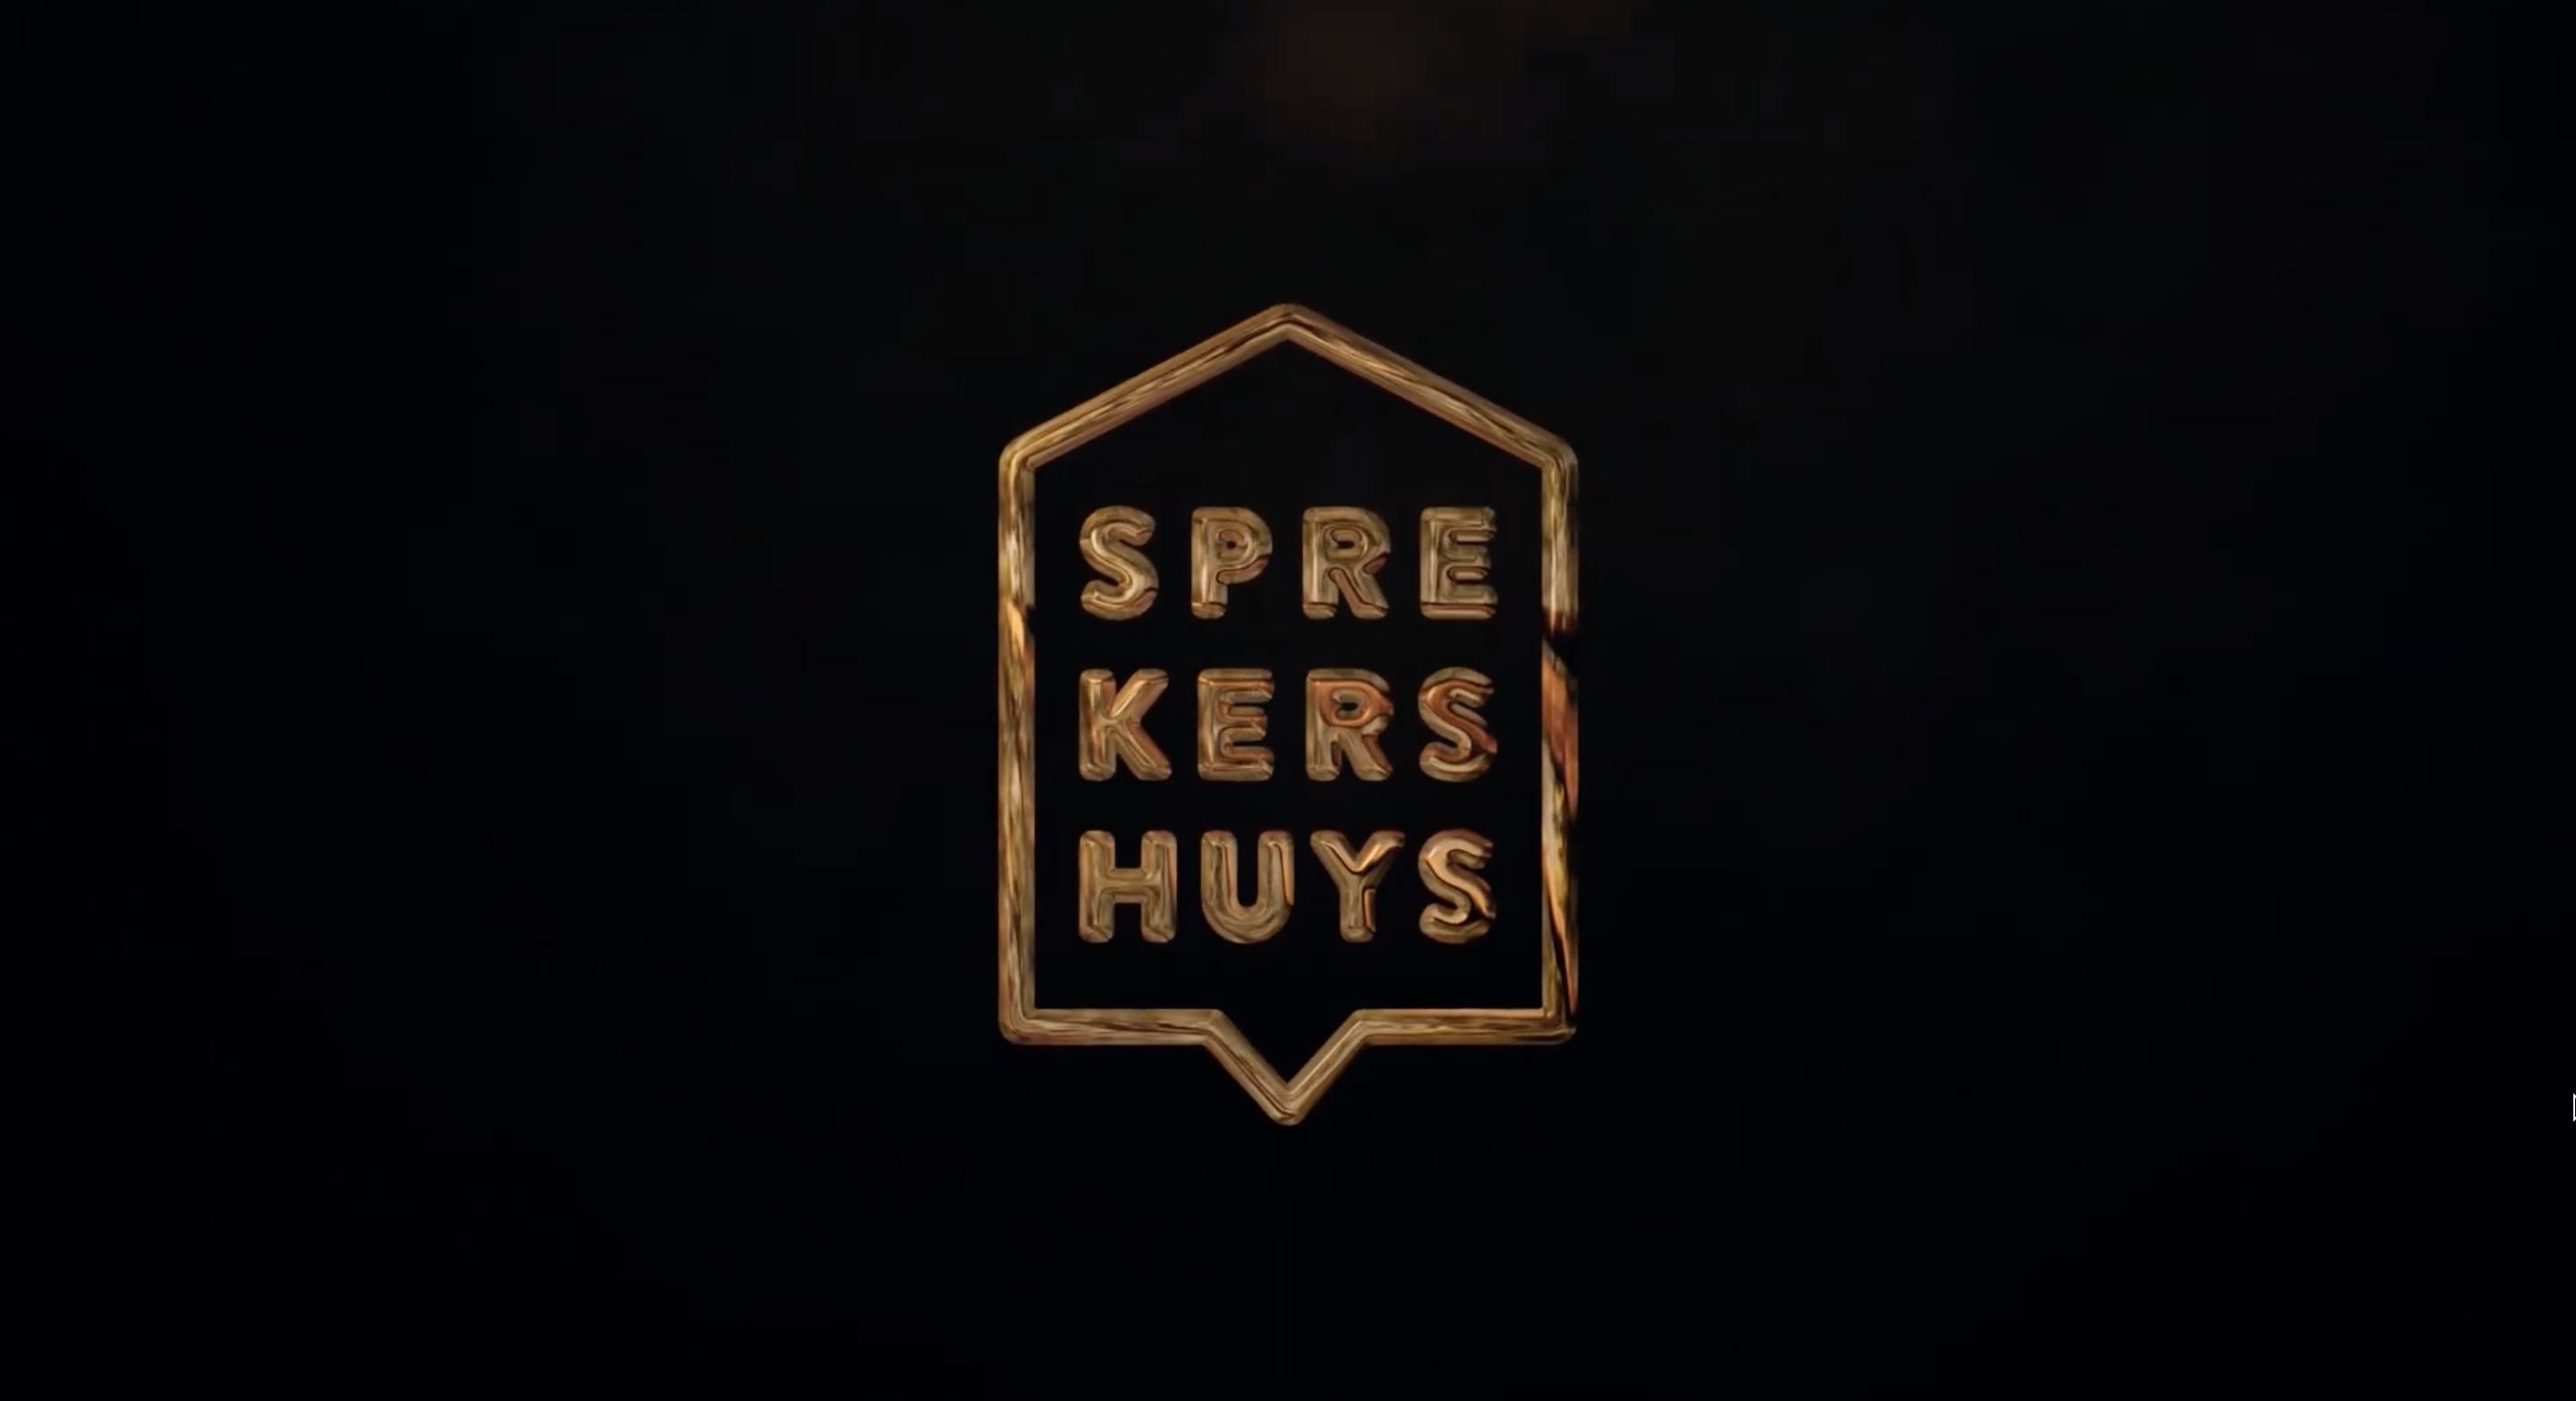 Sprekershuys logo in het goud